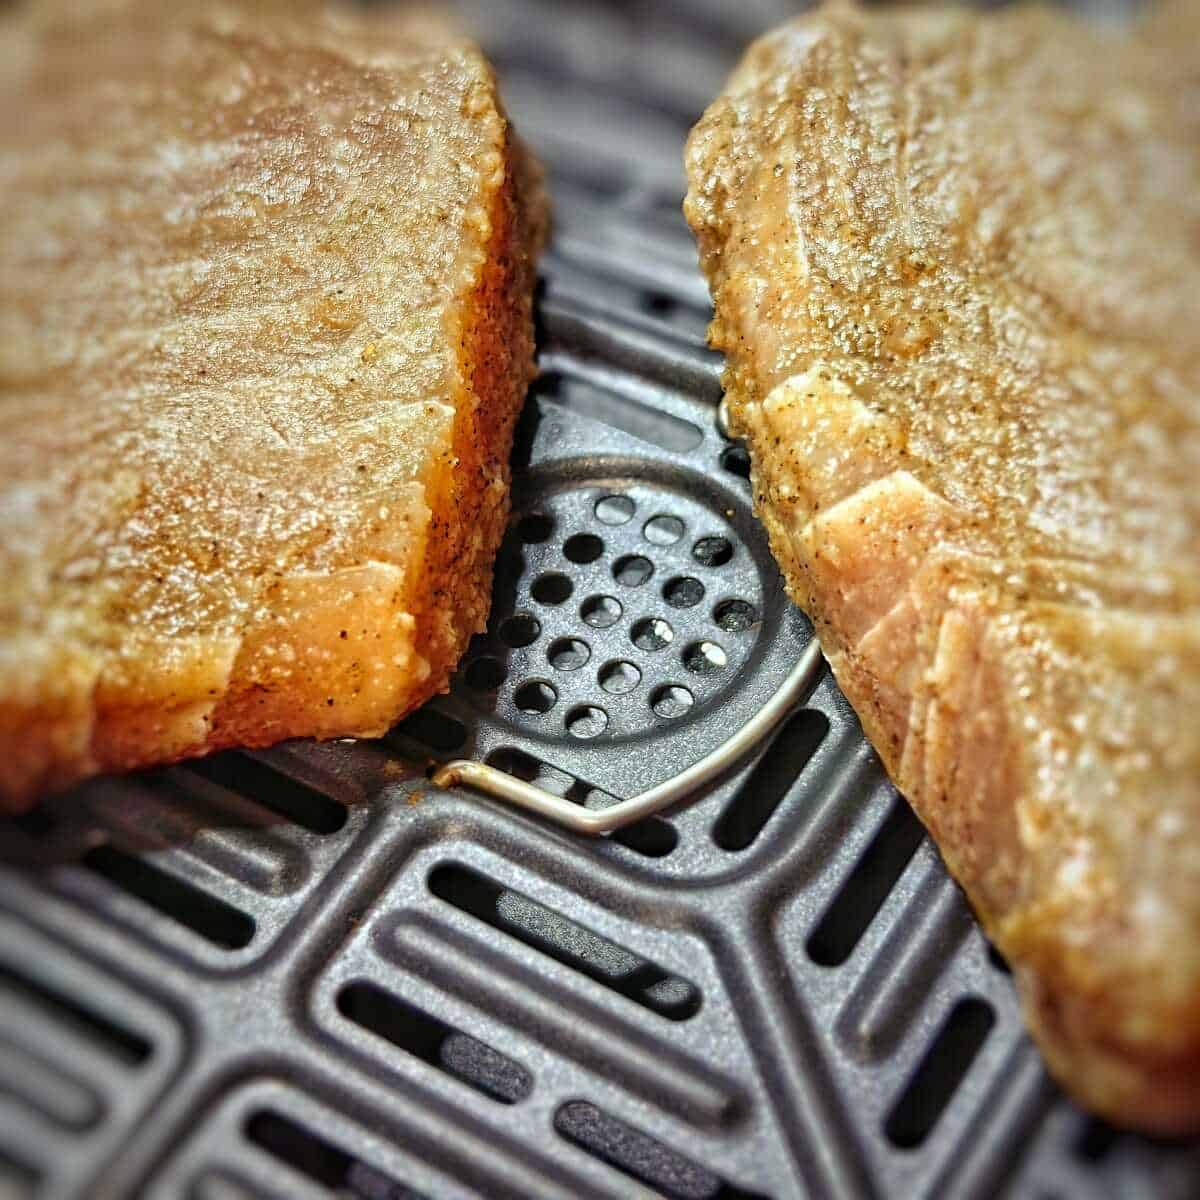 tuna steaks in air fryer basket